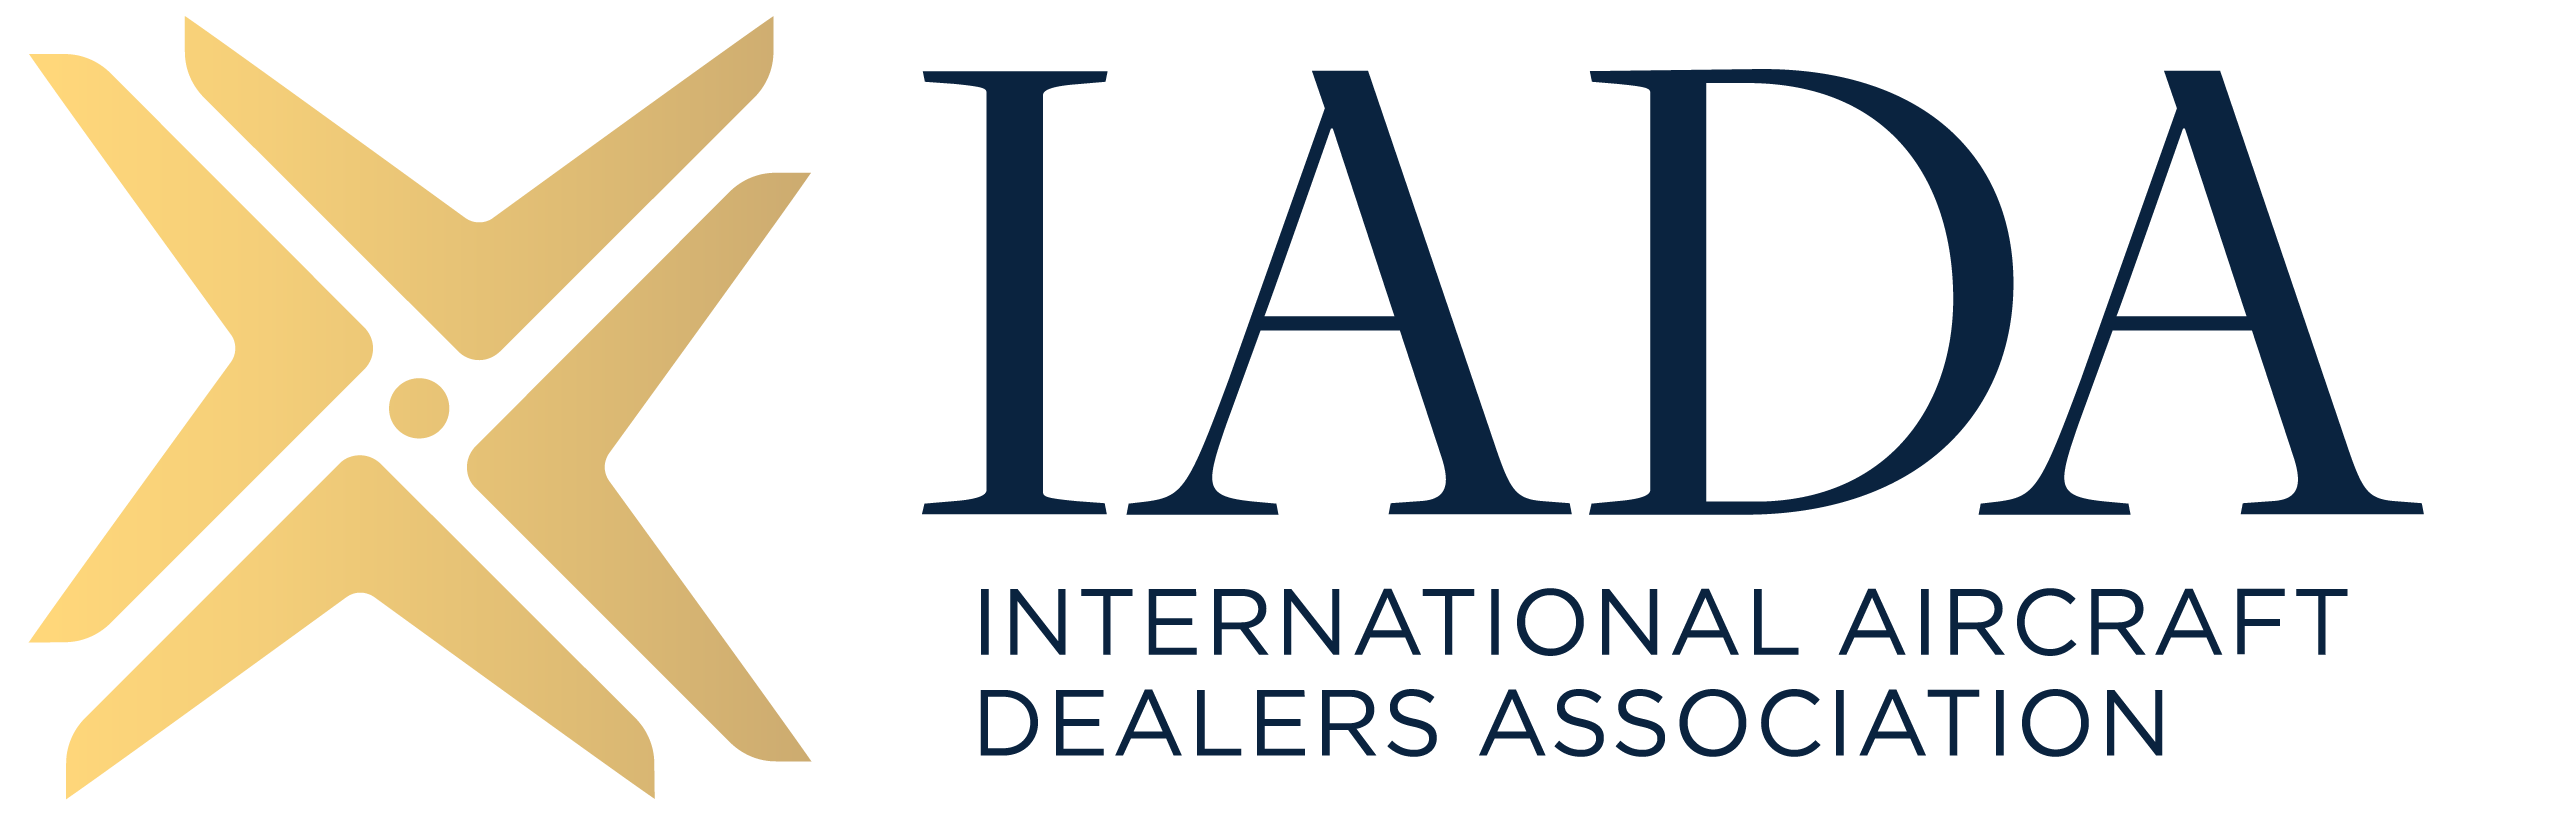 International Aircraft Dealers Association